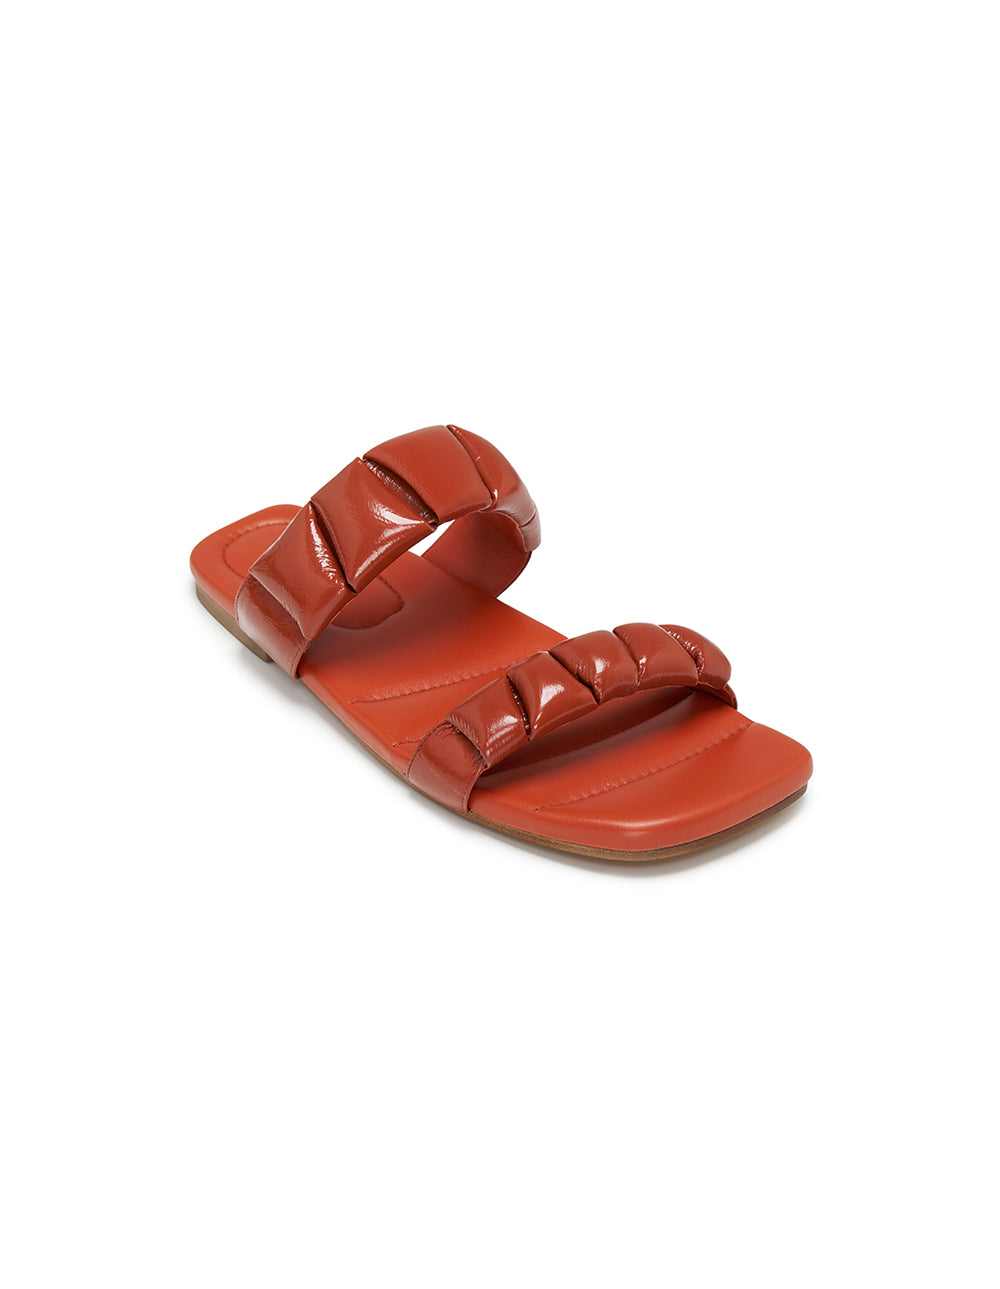 Dries-Van-Noten-Sandals-Flat-Orange-2